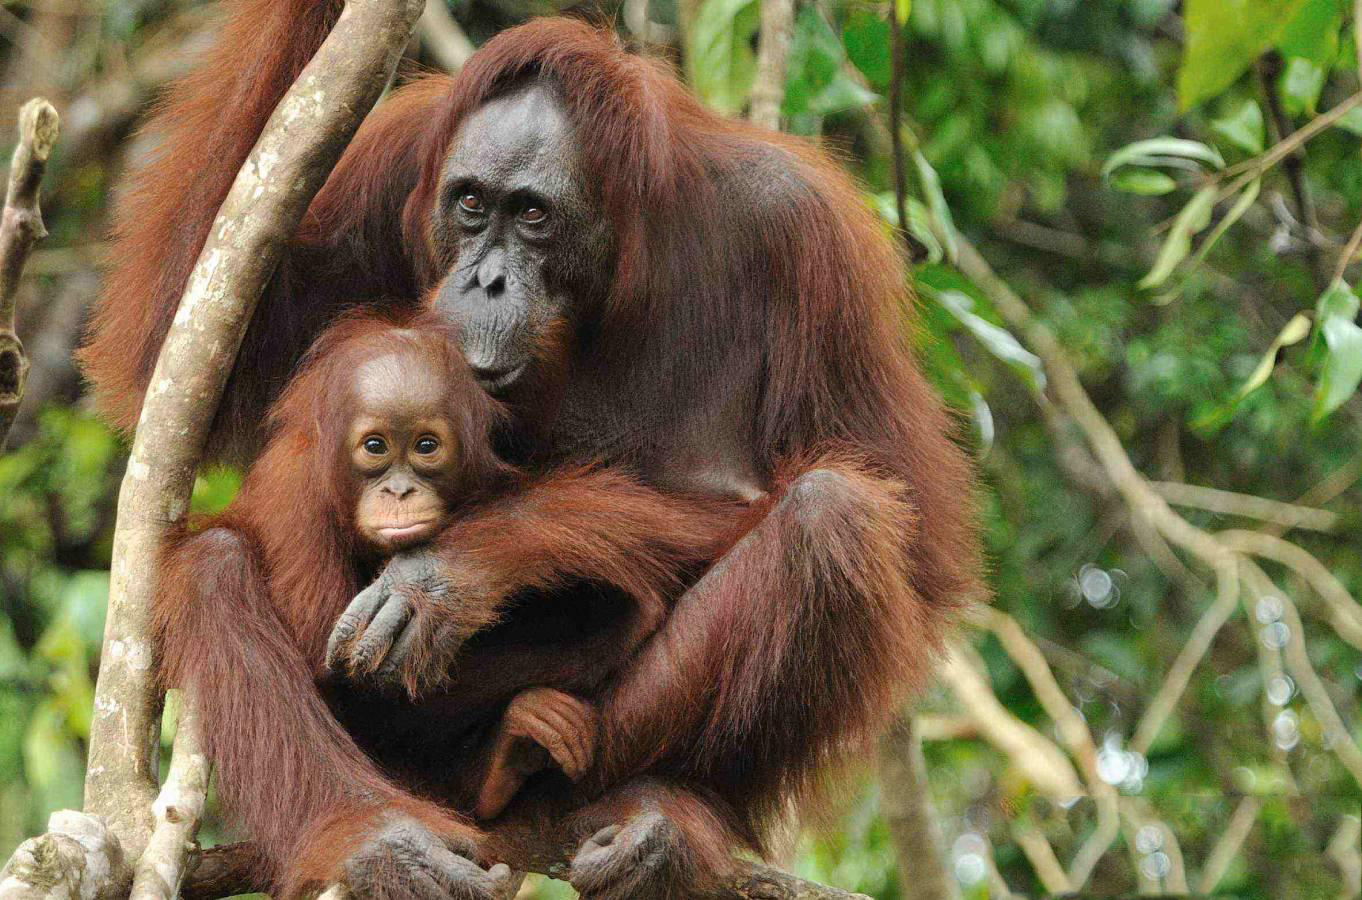 fond d'écran orang outan,orang outan,primate,animal terrestre,faune,jungle